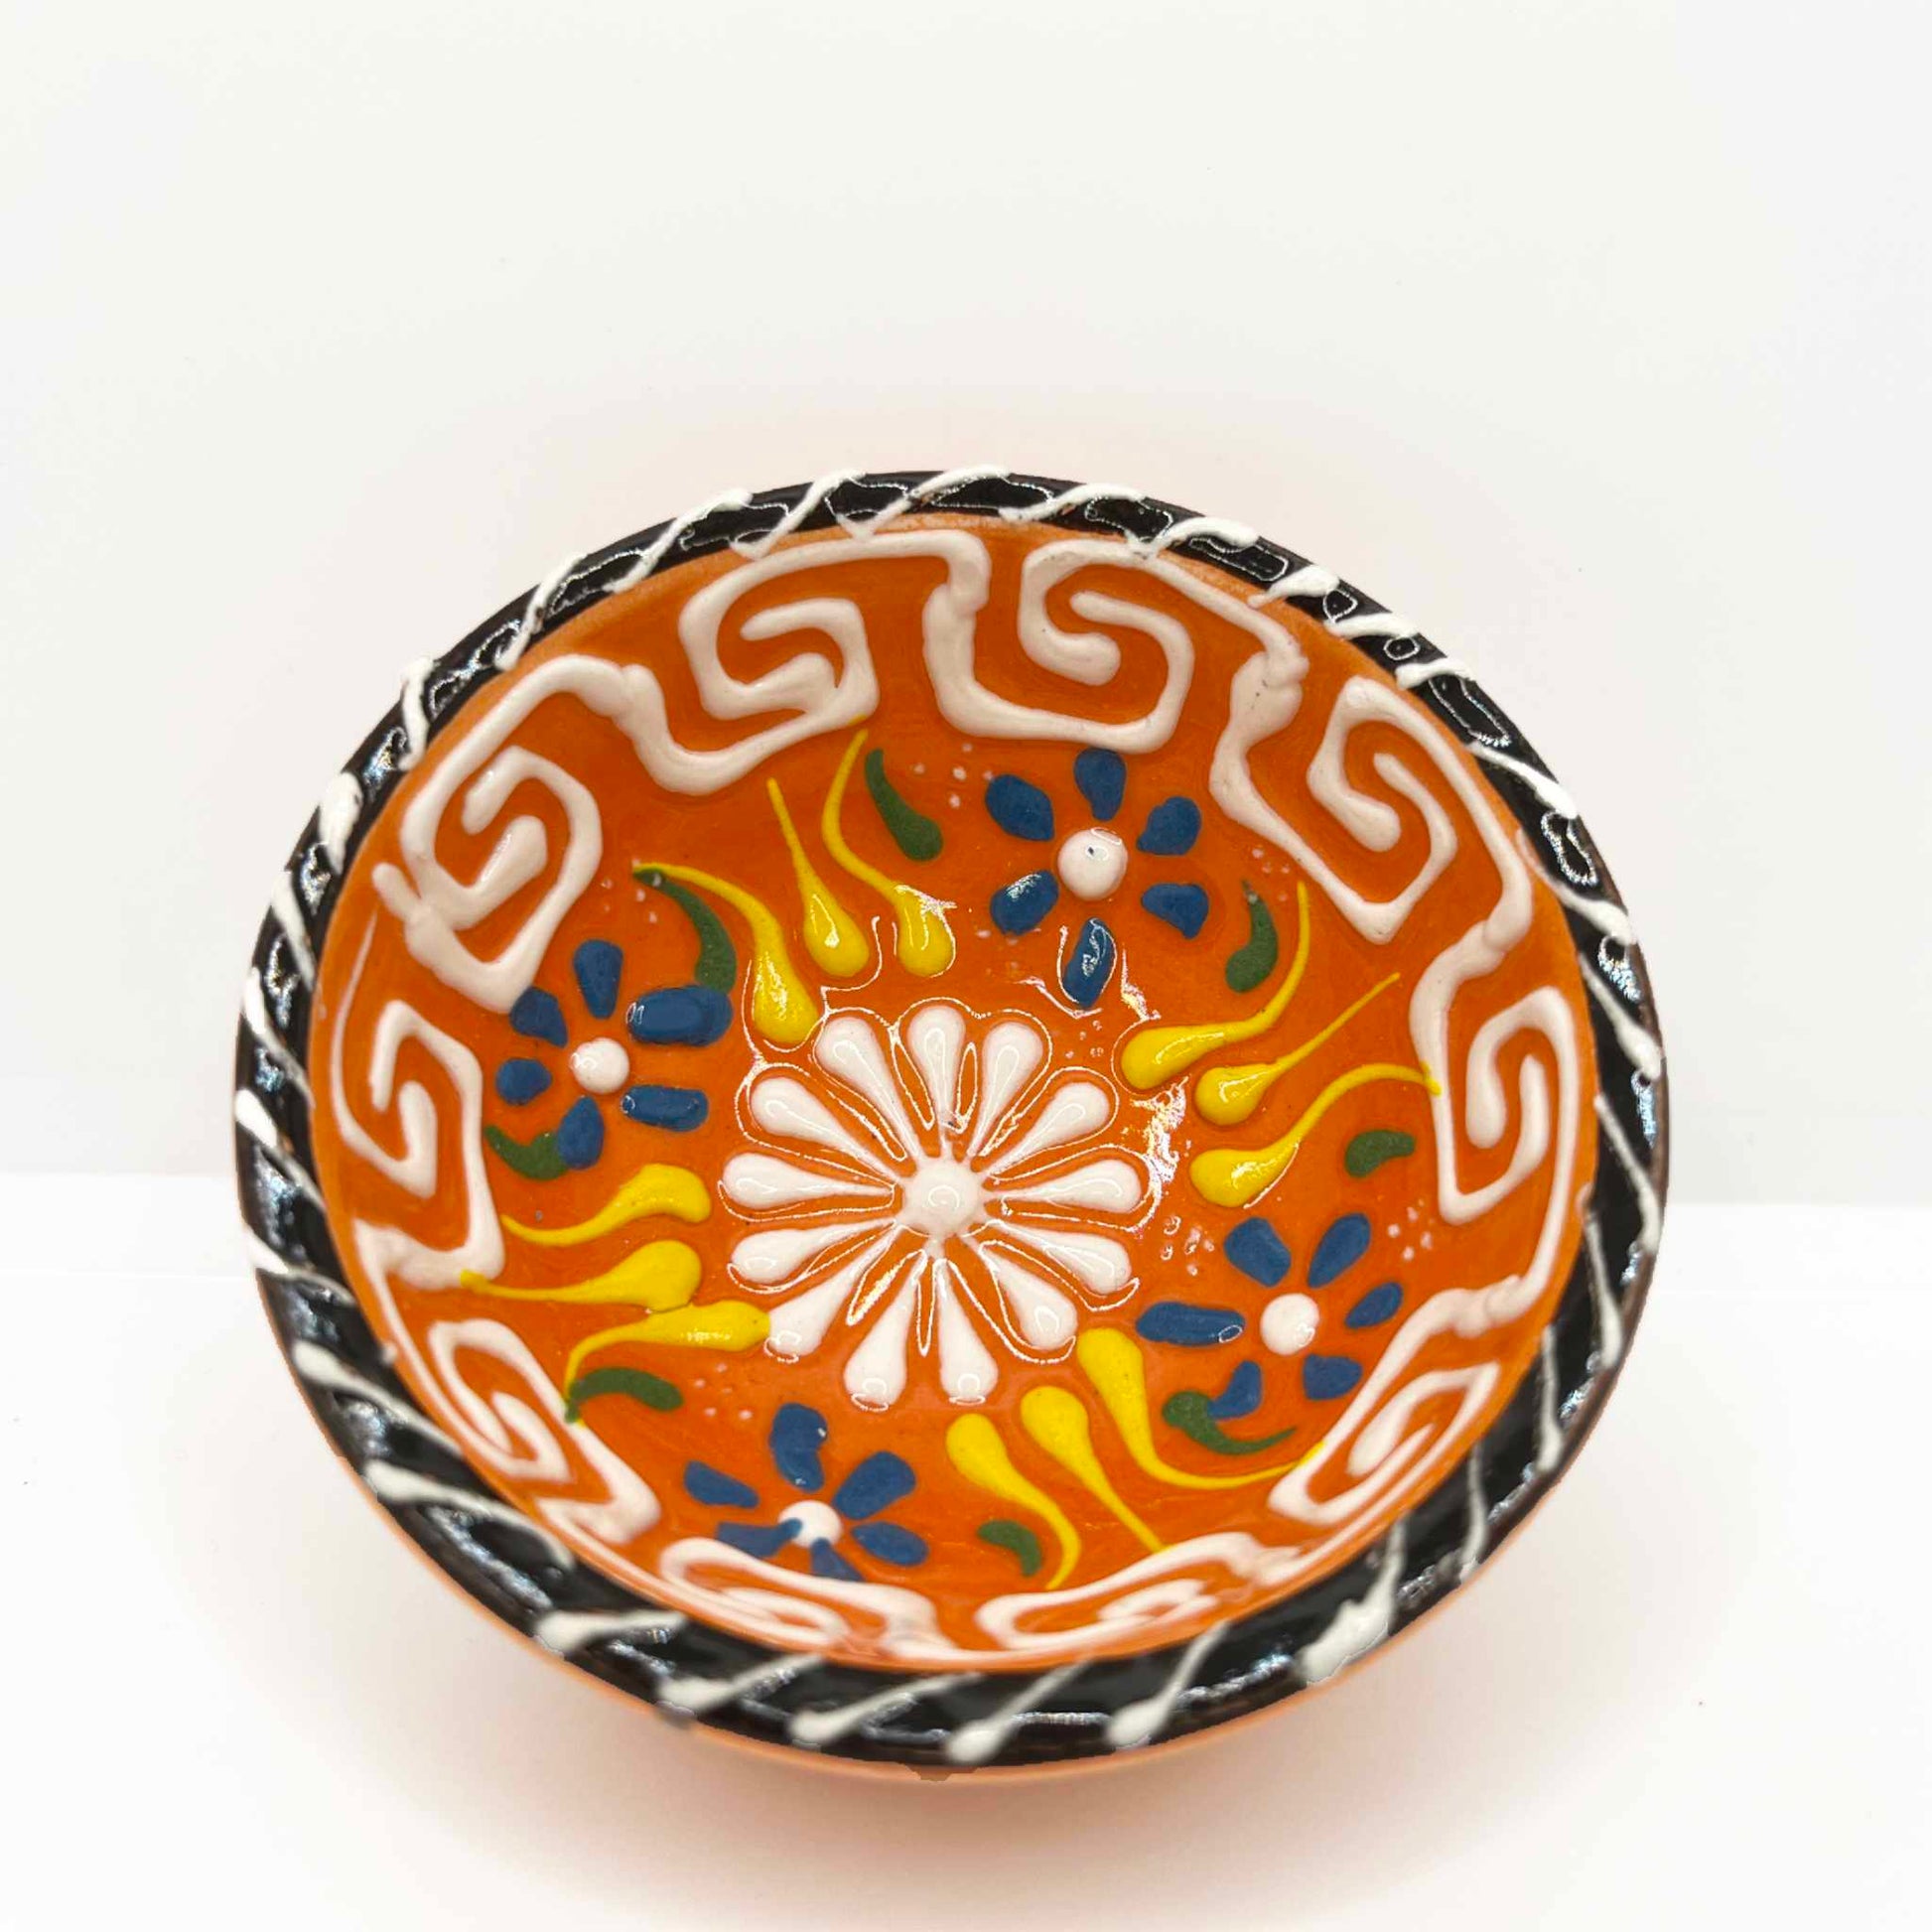 Cuenco de cerámica artesanal turca 5cm naranja